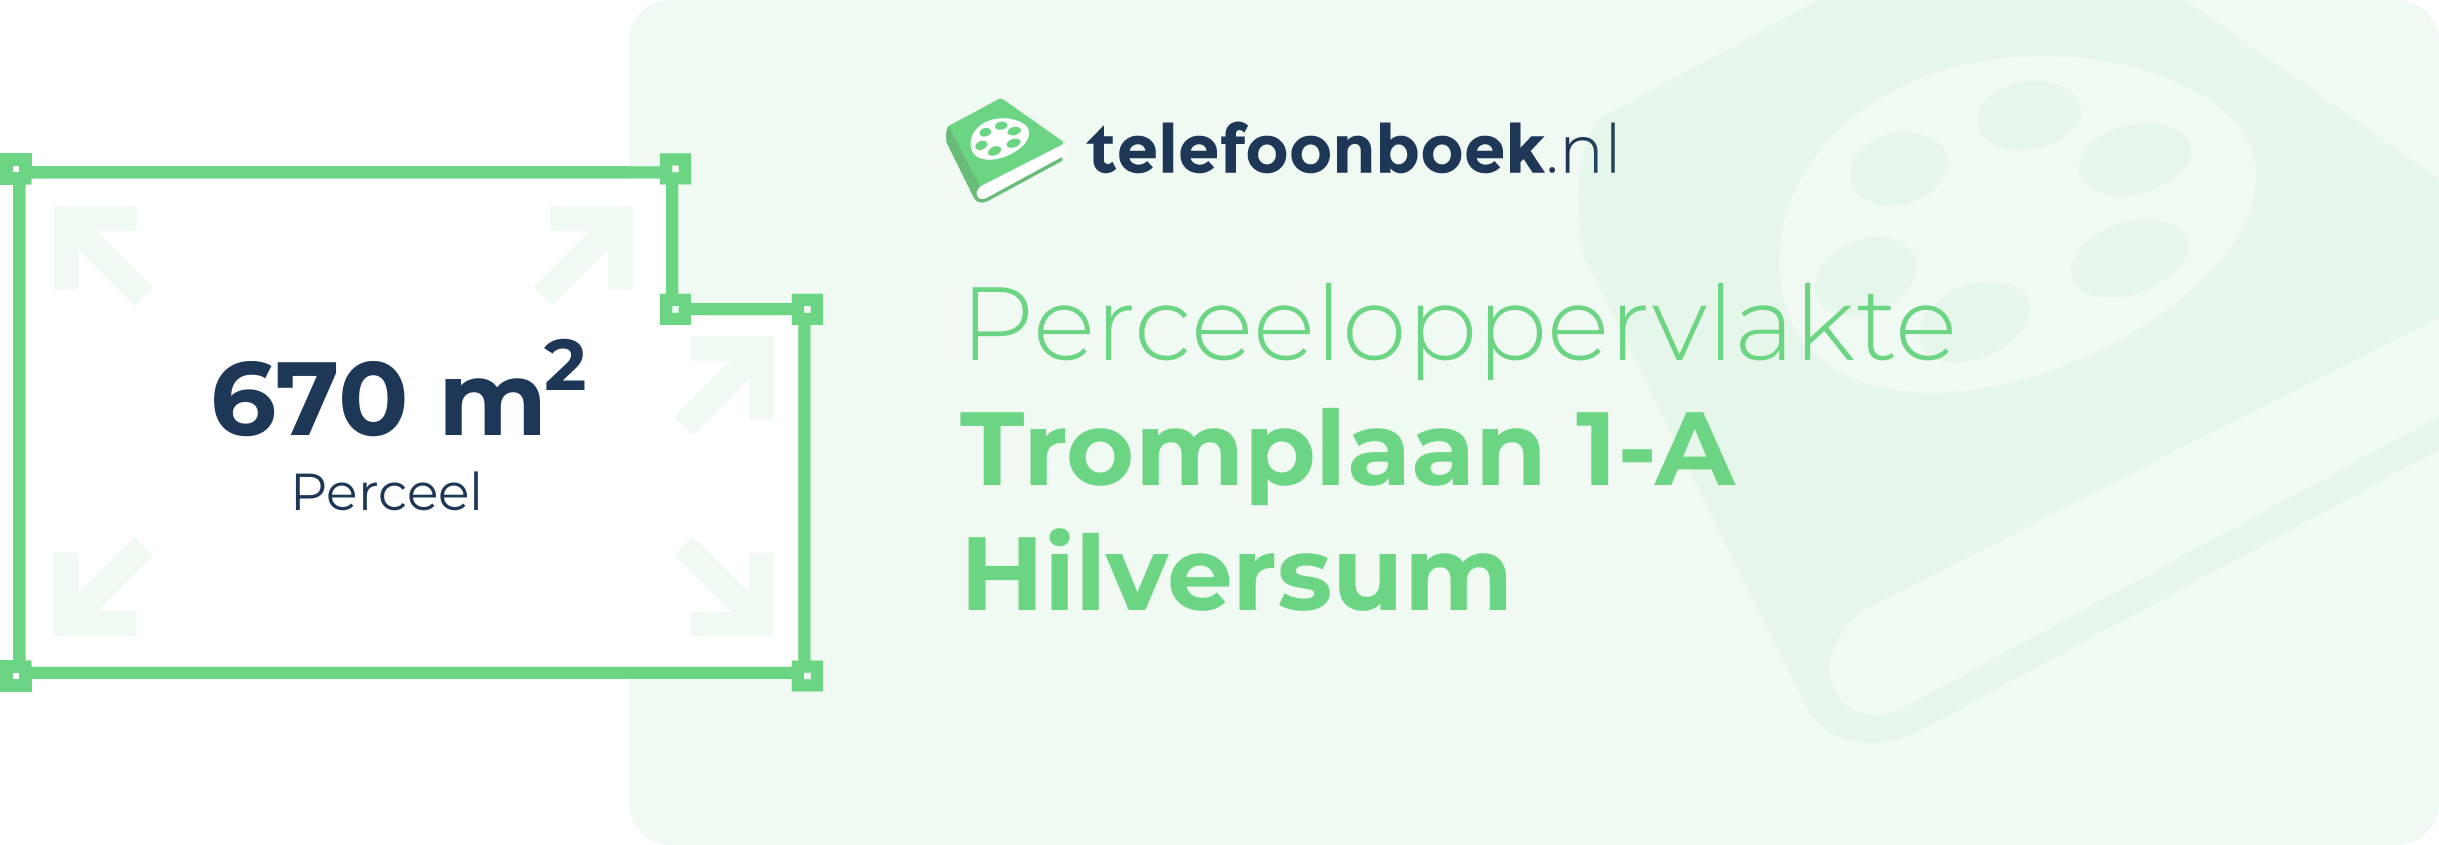 Perceeloppervlakte Tromplaan 1-A Hilversum